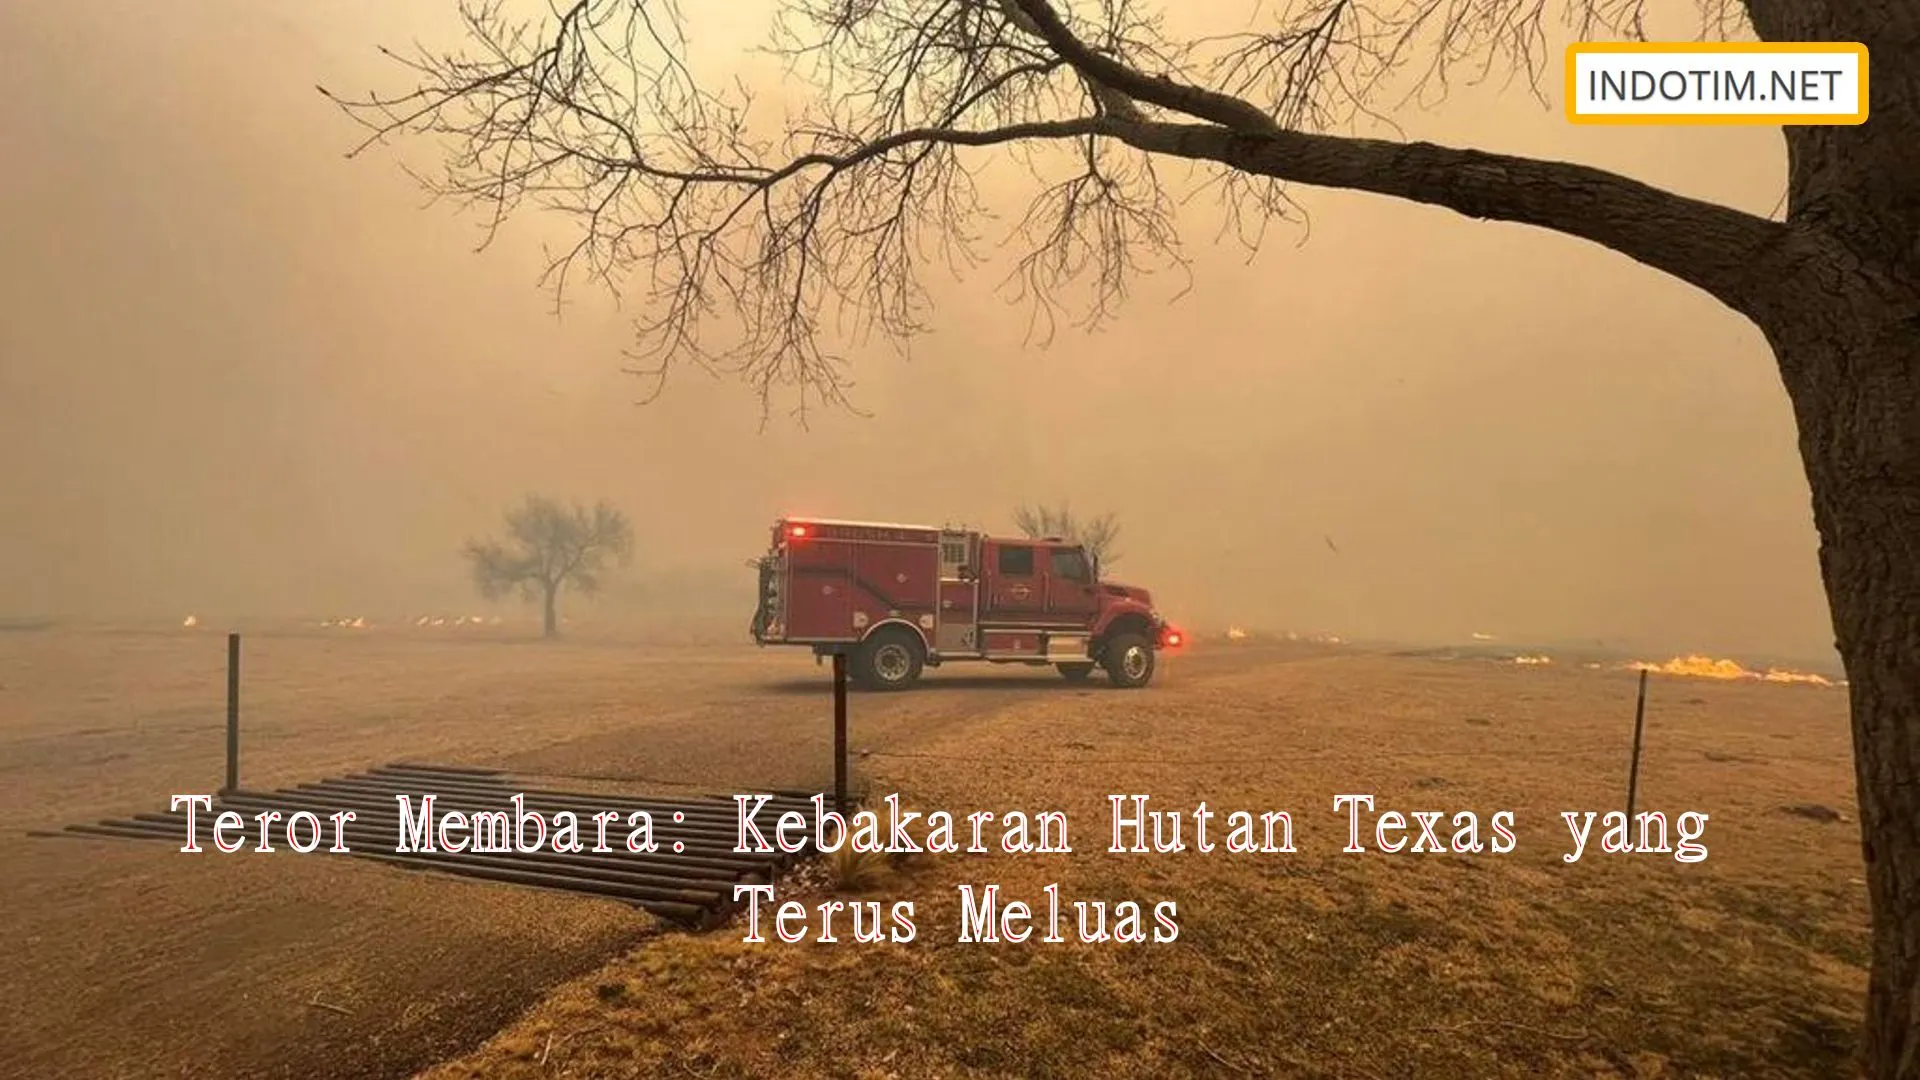 Teror Membara: Kebakaran Hutan Texas yang Terus Meluas